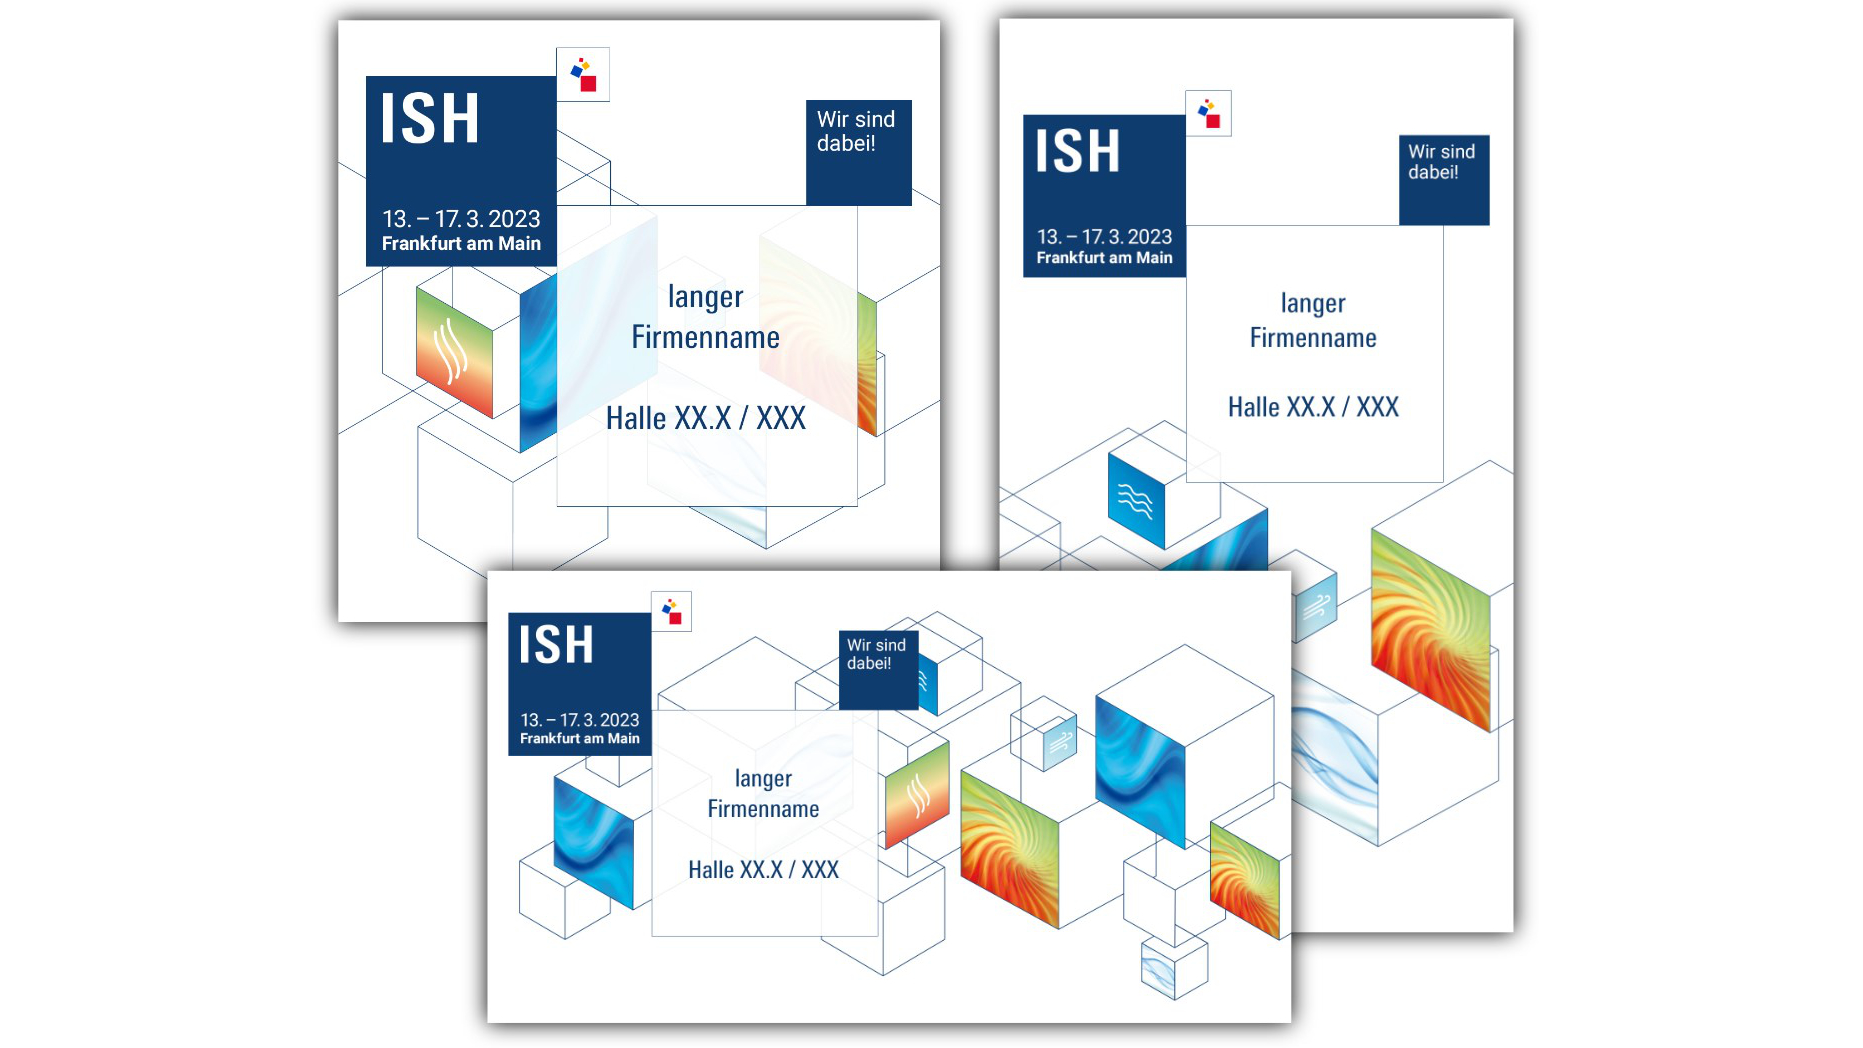 ISH Formats for Social Media